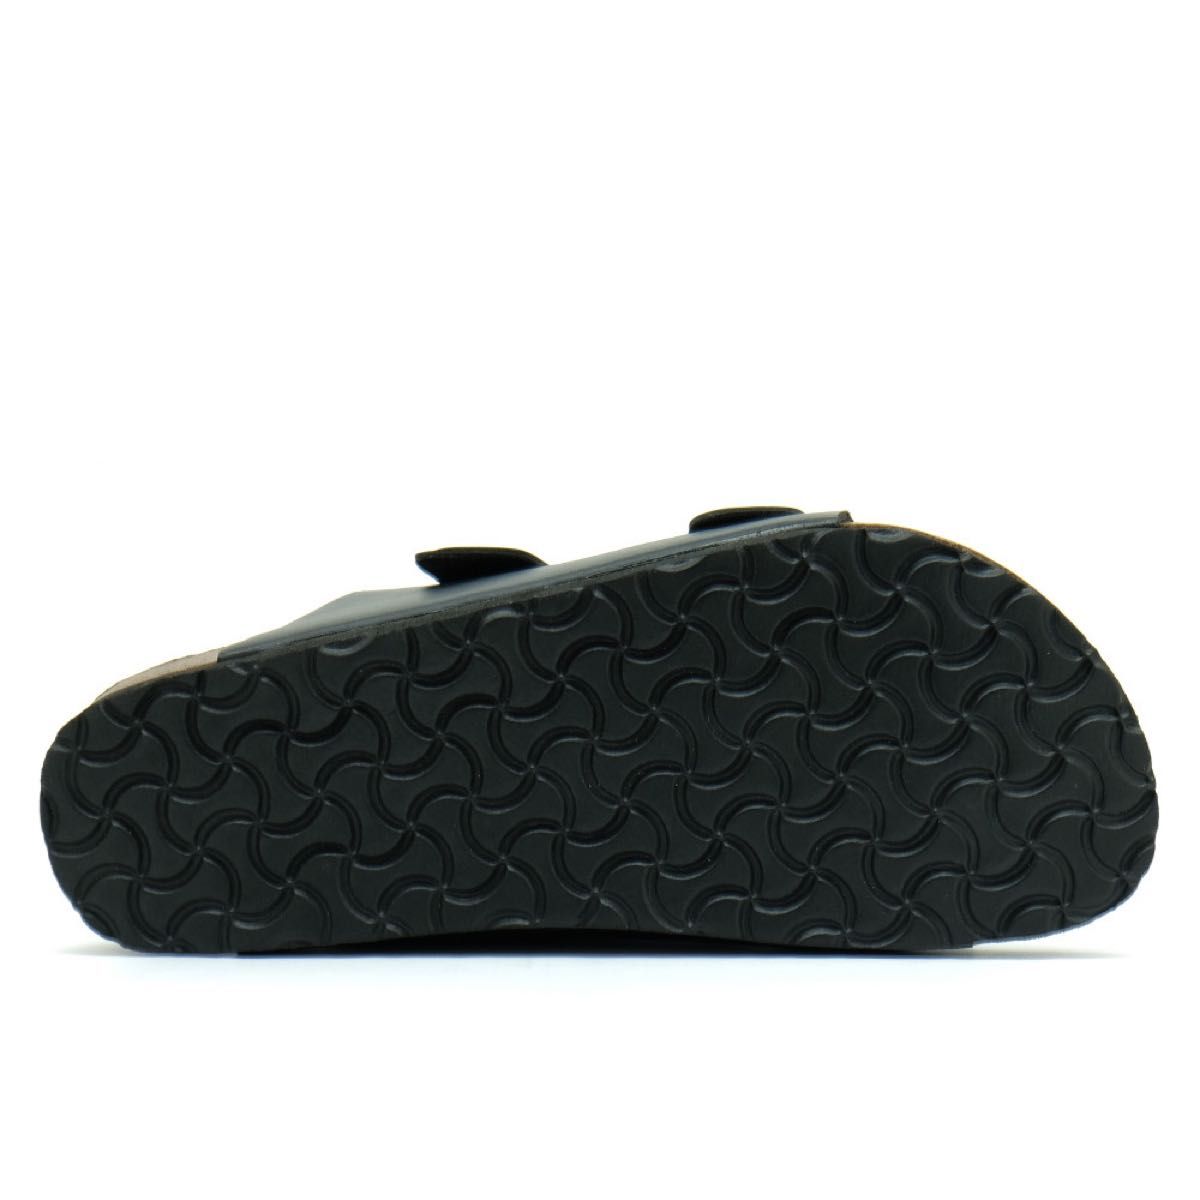 コンフォートサンダル メンズ ブラック 黒 28cm アリゾナ スポーツ リゾート カジュアル シンプル 定番 人気 靴 男性用